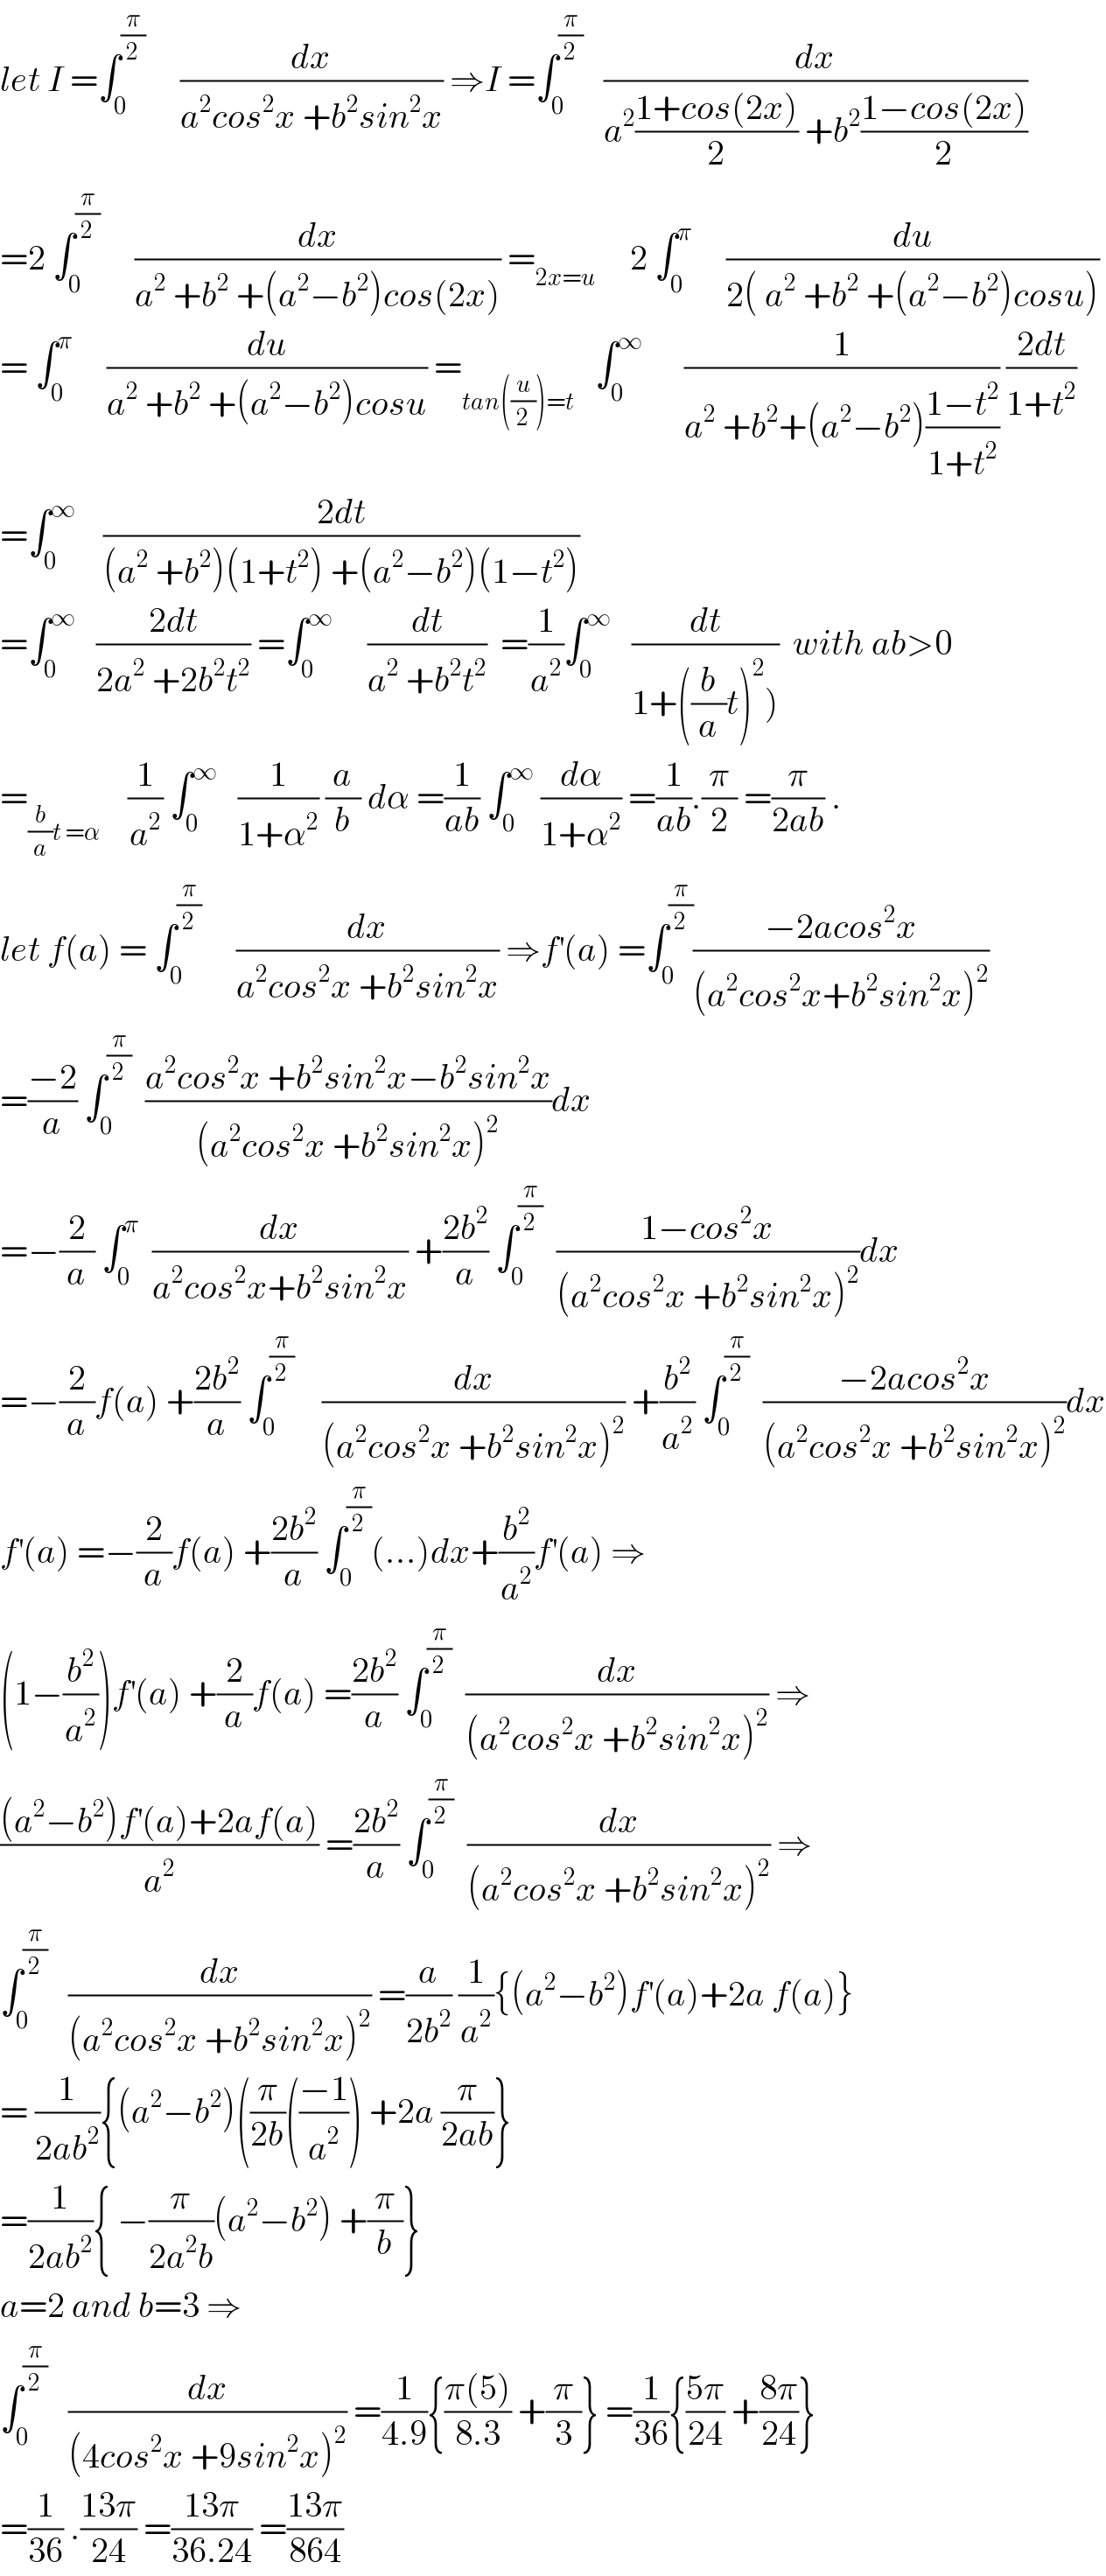 let I =∫_0 ^(π/2)      (dx/(a^2 cos^2 x +b^2 sin^2 x)) ⇒I =∫_0 ^(π/2)    (dx/(a^2 ((1+cos(2x))/2) +b^2 ((1−cos(2x))/2)))  =2 ∫_0 ^(π/2)      (dx/(a^2  +b^2  +(a^2 −b^2 )cos(2x))) =_(2x=u)      2 ∫_0 ^π      (du/(2( a^2  +b^2  +(a^2 −b^2 )cosu)))  = ∫_0 ^π      (du/(a^2  +b^2  +(a^2 −b^2 )cosu)) =_(tan((u/2))=t)    ∫_0 ^∞       (1/(a^2  +b^2 +(a^2 −b^2 )((1−t^2 )/(1+t^2 )))) ((2dt)/(1+t^2 ))  =∫_0 ^∞     ((2dt)/((a^2  +b^2 )(1+t^2 ) +(a^2 −b^2 )(1−t^2 )))  =∫_0 ^∞    ((2dt)/(2a^2  +2b^2 t^2 )) =∫_0 ^∞      (dt/(a^2  +b^2 t^2 ))  =(1/a^2 )∫_0 ^∞    (dt/(1+((b/a)t)^2 )))  with ab>0  =_((b/a)t =α)     (1/a^2 ) ∫_0 ^∞    (1/(1+α^2 )) (a/b) dα =(1/(ab)) ∫_0 ^∞  (dα/(1+α^2 )) =(1/(ab)).(π/2) =(π/(2ab)) .  let f(a) = ∫_0 ^(π/2)      (dx/(a^2 cos^2 x +b^2 sin^2 x)) ⇒f^′ (a) =∫_0 ^(π/2) ((−2acos^2 x)/((a^2 cos^2 x+b^2 sin^2 x)^2 ))  =((−2)/a) ∫_0 ^(π/2)   ((a^2 cos^2 x +b^2 sin^2 x−b^2 sin^2 x)/((a^2 cos^2 x +b^2 sin^2 x)^2 ))dx  =−(2/a) ∫_0 ^π   (dx/(a^2 cos^2 x+b^2 sin^2 x)) +((2b^2 )/a) ∫_0 ^(π/2)   ((1−cos^2 x)/((a^2 cos^2 x +b^2 sin^2 x)^2 ))dx  =−(2/a)f(a) +((2b^2 )/a) ∫_0 ^(π/2)     (dx/((a^2 cos^2 x +b^2 sin^2 x)^2 )) +(b^2 /a^2 ) ∫_0 ^(π/2)   ((−2acos^2 x)/((a^2 cos^2 x +b^2 sin^2 x)^2 ))dx  f^′ (a) =−(2/a)f(a) +((2b^2 )/a) ∫_0 ^(π/2) (...)dx+(b^2 /a^2 )f^′ (a) ⇒  (1−(b^2 /a^2 ))f^′ (a) +(2/a)f(a) =((2b^2 )/a) ∫_0 ^(π/2)   (dx/((a^2 cos^2 x +b^2 sin^2 x)^2 )) ⇒  (((a^2 −b^2 )f^′ (a)+2af(a))/a^2 ) =((2b^2 )/a) ∫_0 ^(π/2)   (dx/((a^2 cos^2 x +b^2 sin^2 x)^2 )) ⇒  ∫_0 ^(π/2)    (dx/((a^2 cos^2 x +b^2 sin^2 x)^2 )) =(a/(2b^2 )) (1/a^2 ){(a^2 −b^2 )f^′ (a)+2a f(a)}  = (1/(2ab^2 )){(a^2 −b^2 )((π/(2b))(((−1)/a^2 )) +2a (π/(2ab))}  =(1/(2ab^2 )){ −(π/(2a^2 b))(a^2 −b^2 ) +(π/b)}  a=2 and b=3 ⇒  ∫_0 ^(π/2)    (dx/((4cos^2 x +9sin^2 x)^2 )) =(1/(4.9)){((π(5))/(8.3)) +(π/3)} =(1/(36)){((5π)/(24)) +((8π)/(24))}  =(1/(36)) .((13π)/(24)) =((13π)/(36.24)) =((13π)/(864))  